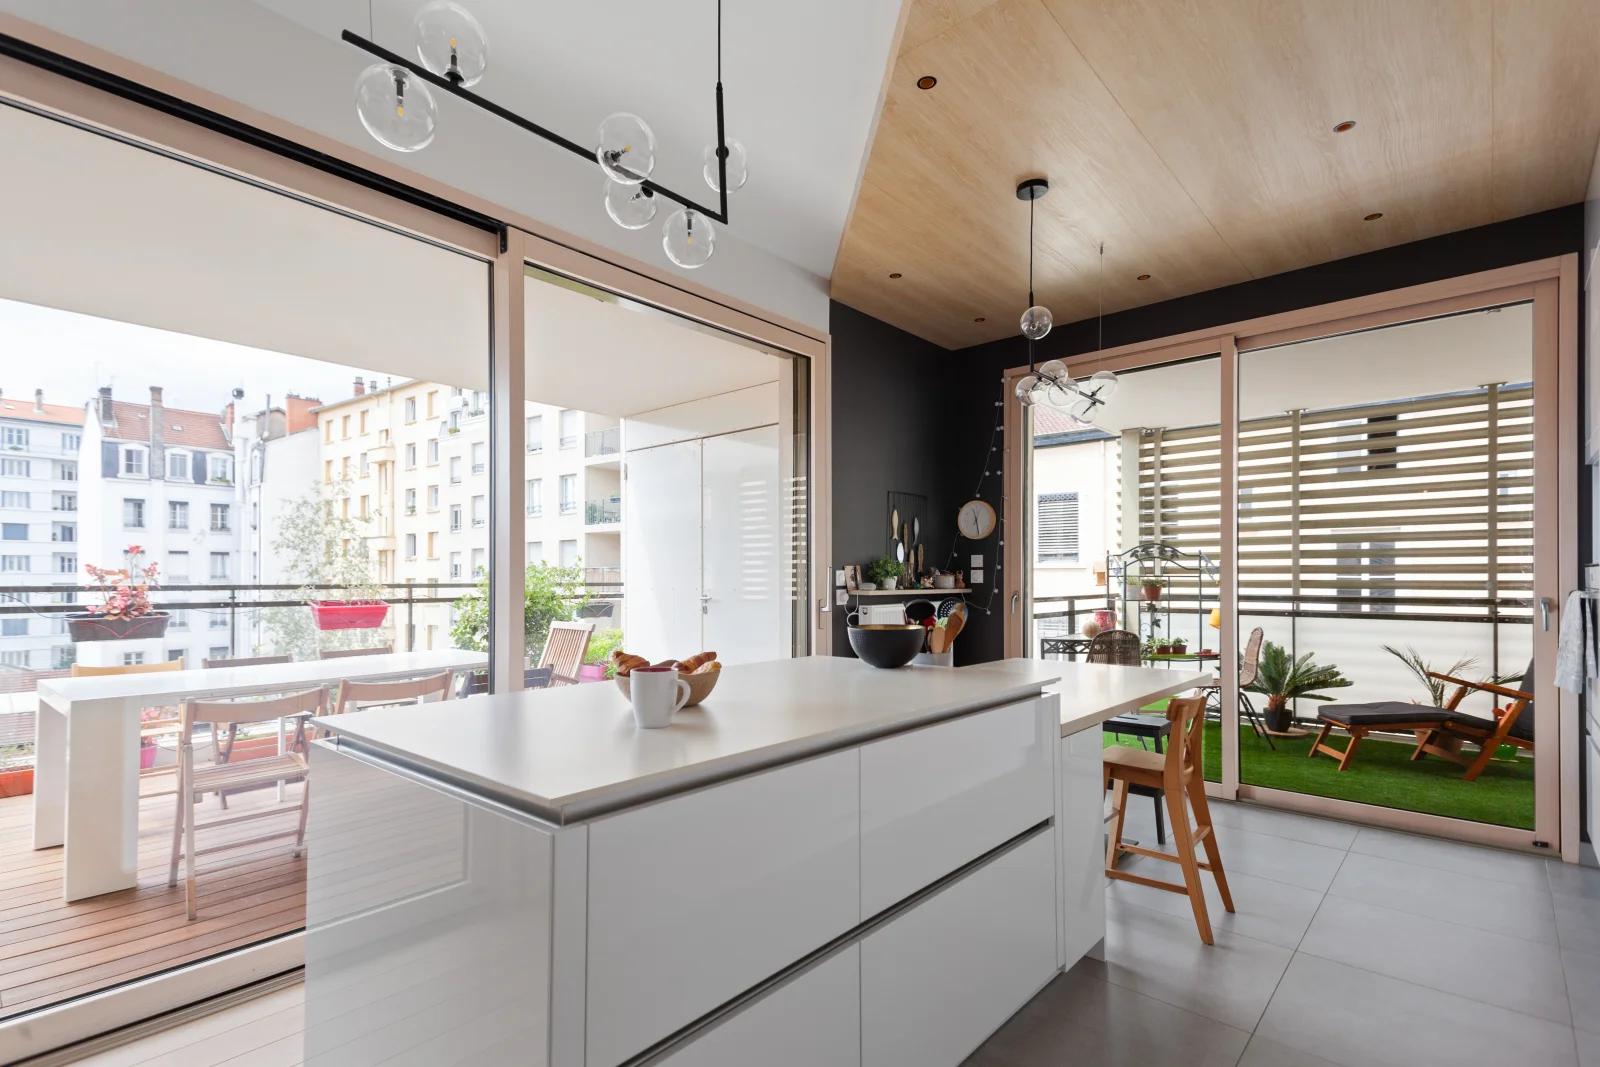 Kitchen dentro Appart. diseño mirador video-proj terraza - 5